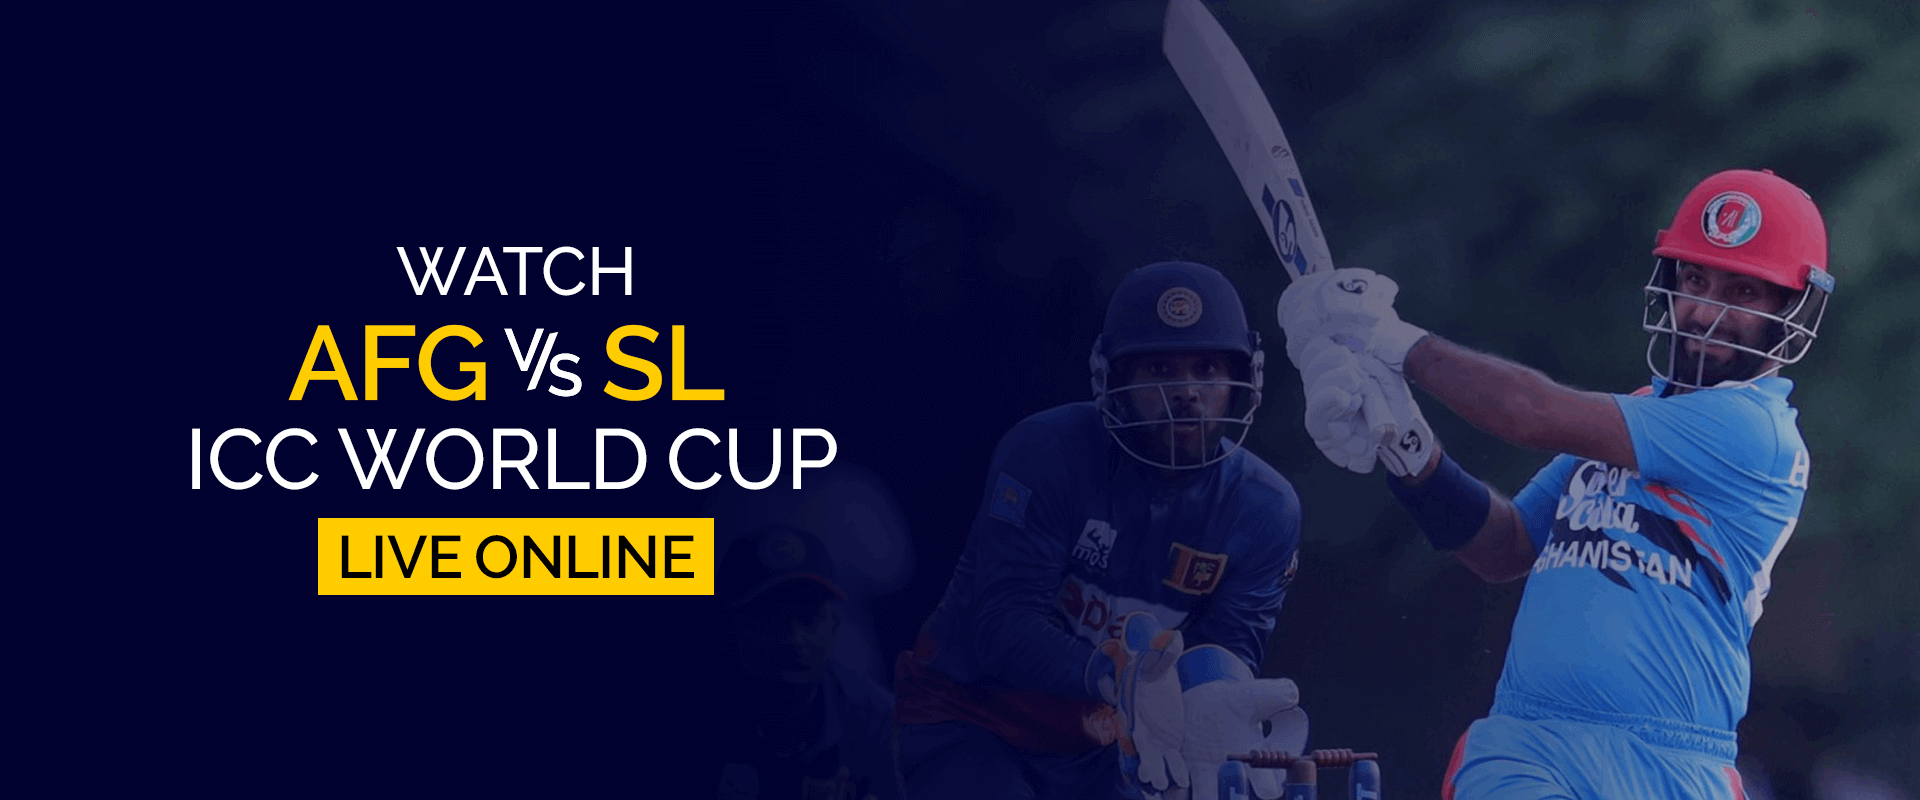 Sehen Sie sich die ICC-Weltmeisterschaft Afghanistan gegen Sri Lanka live online an